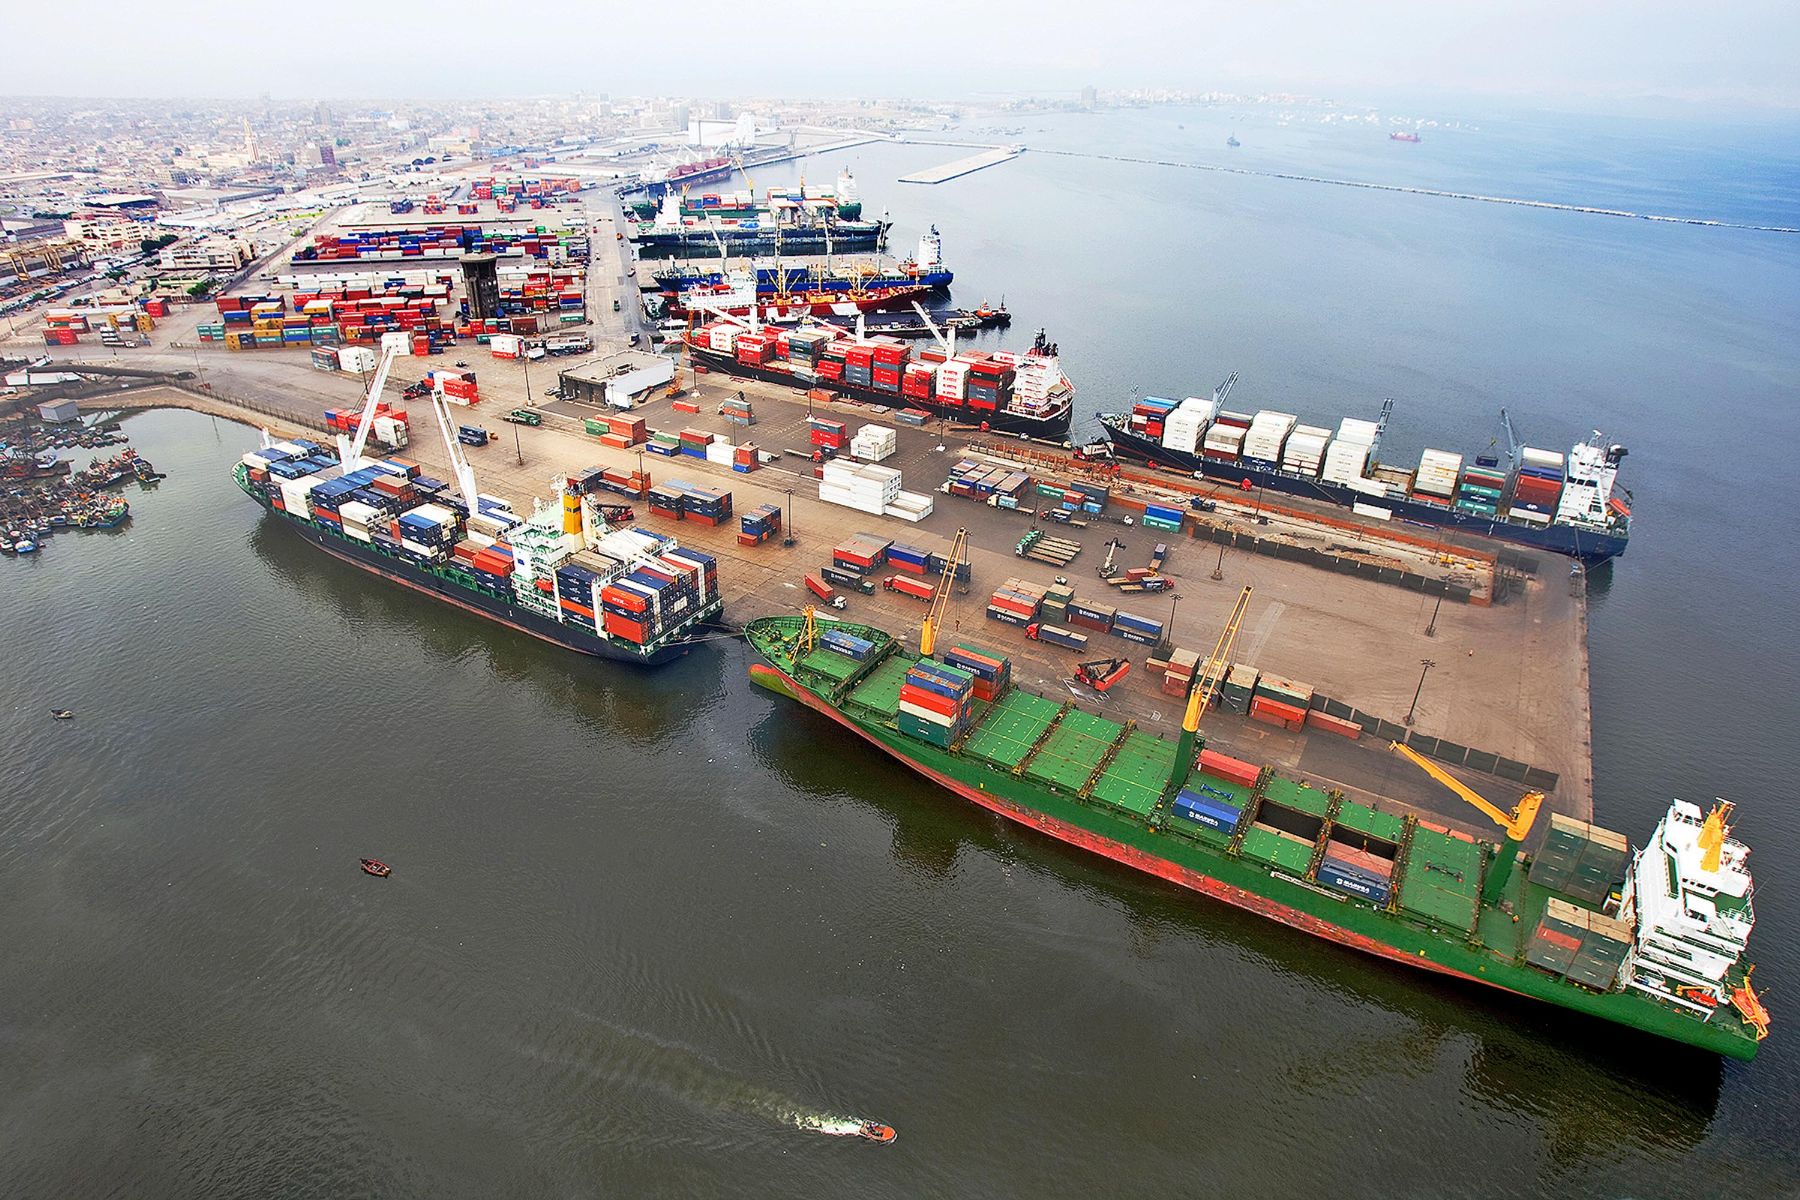 Aduanas apunta a reducir plazos para entregar carga a importadores